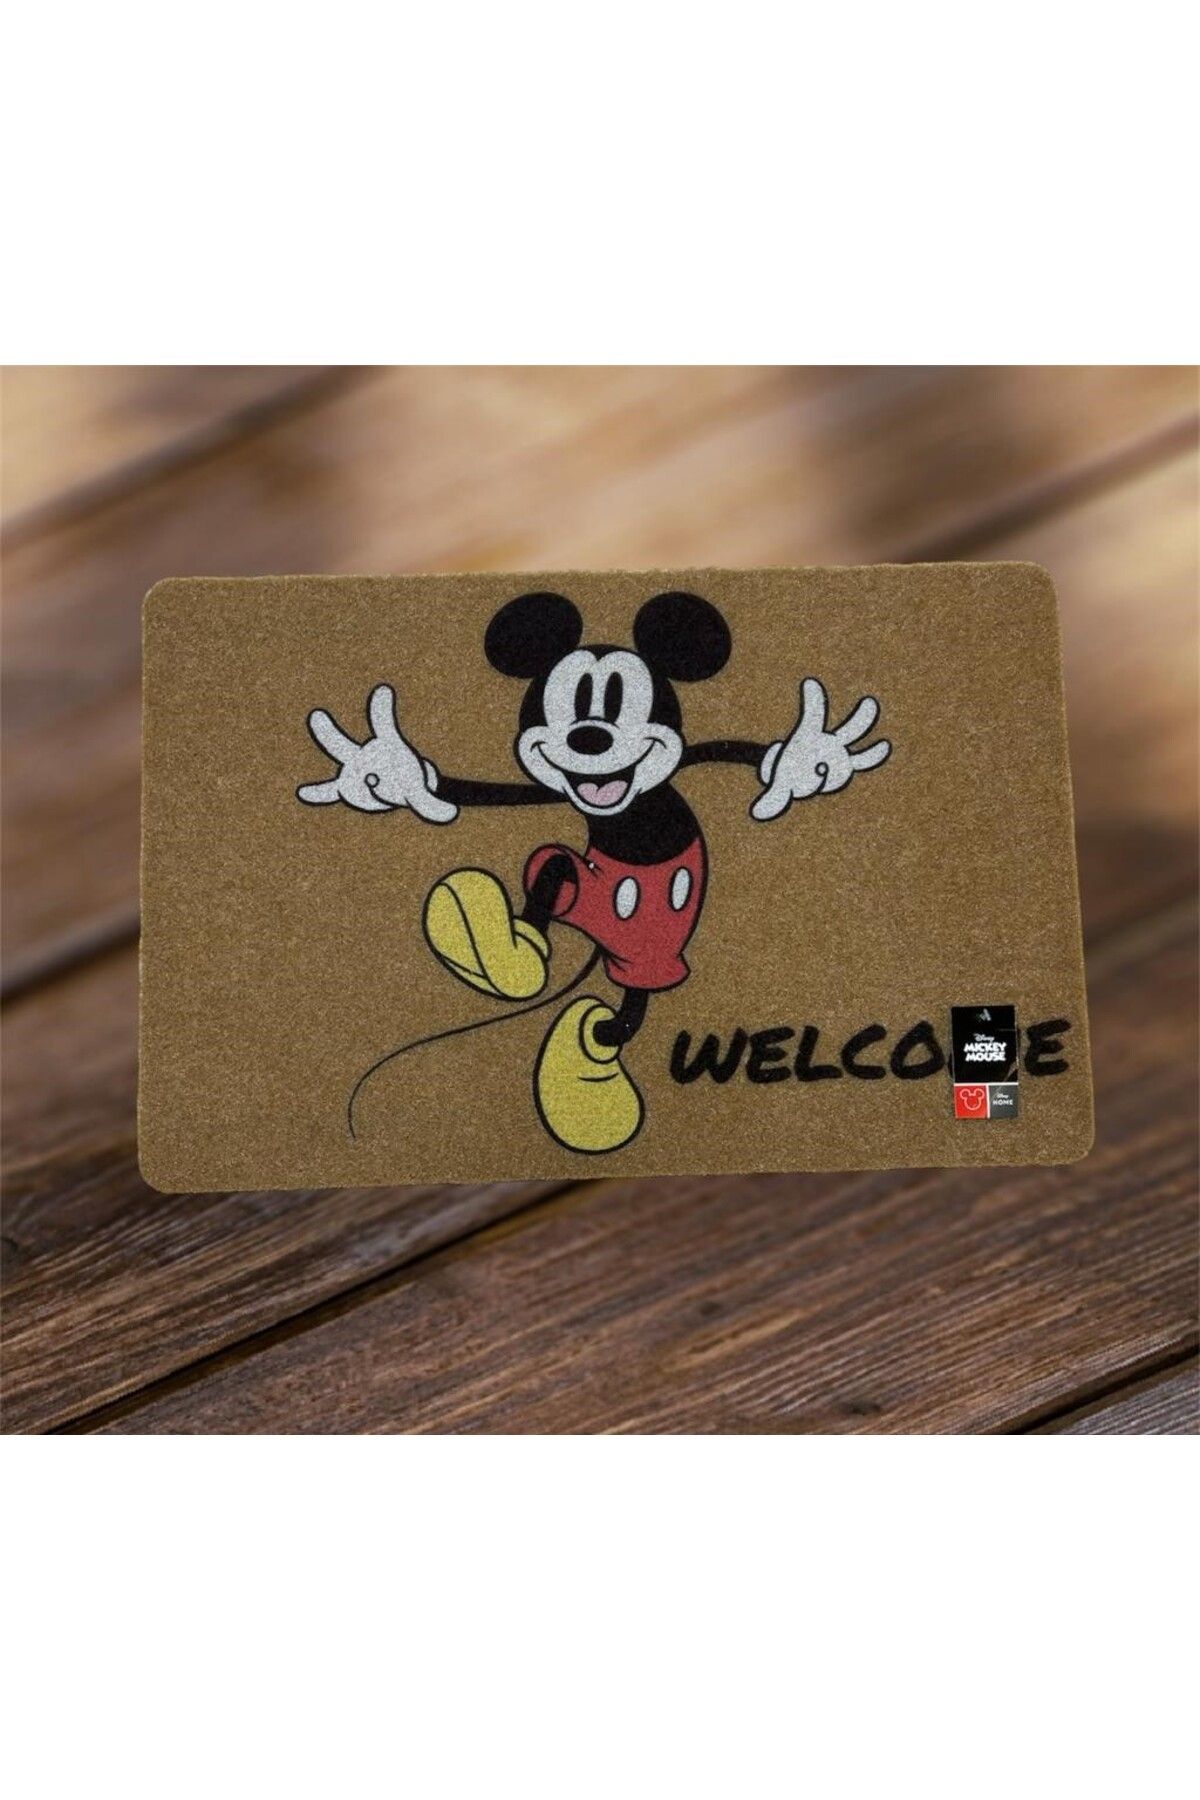 Taç Disney Mıckey Mouse  Dikdörtgen  Kapı Önü Kaymaz Taban  Paspas 40x60 cm